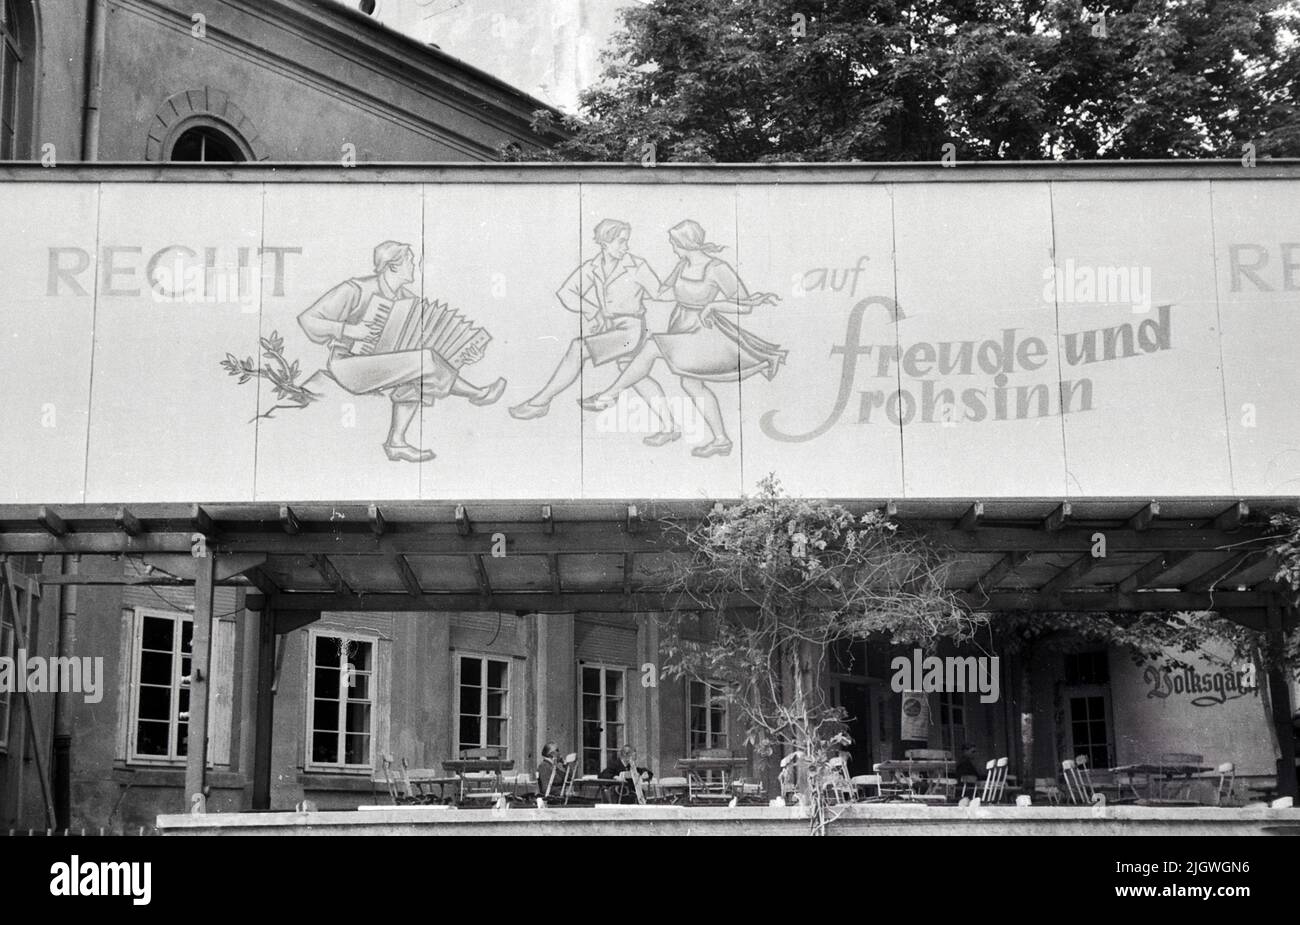 Banner zum 'Recht auf Freude und Frohsinn' an einer Fassade eines Hauses beim Pfingsttreffen und 2. Parlament der FDJ in der Innenstadt von Meissen, Deutschland 1947. Foto Stock